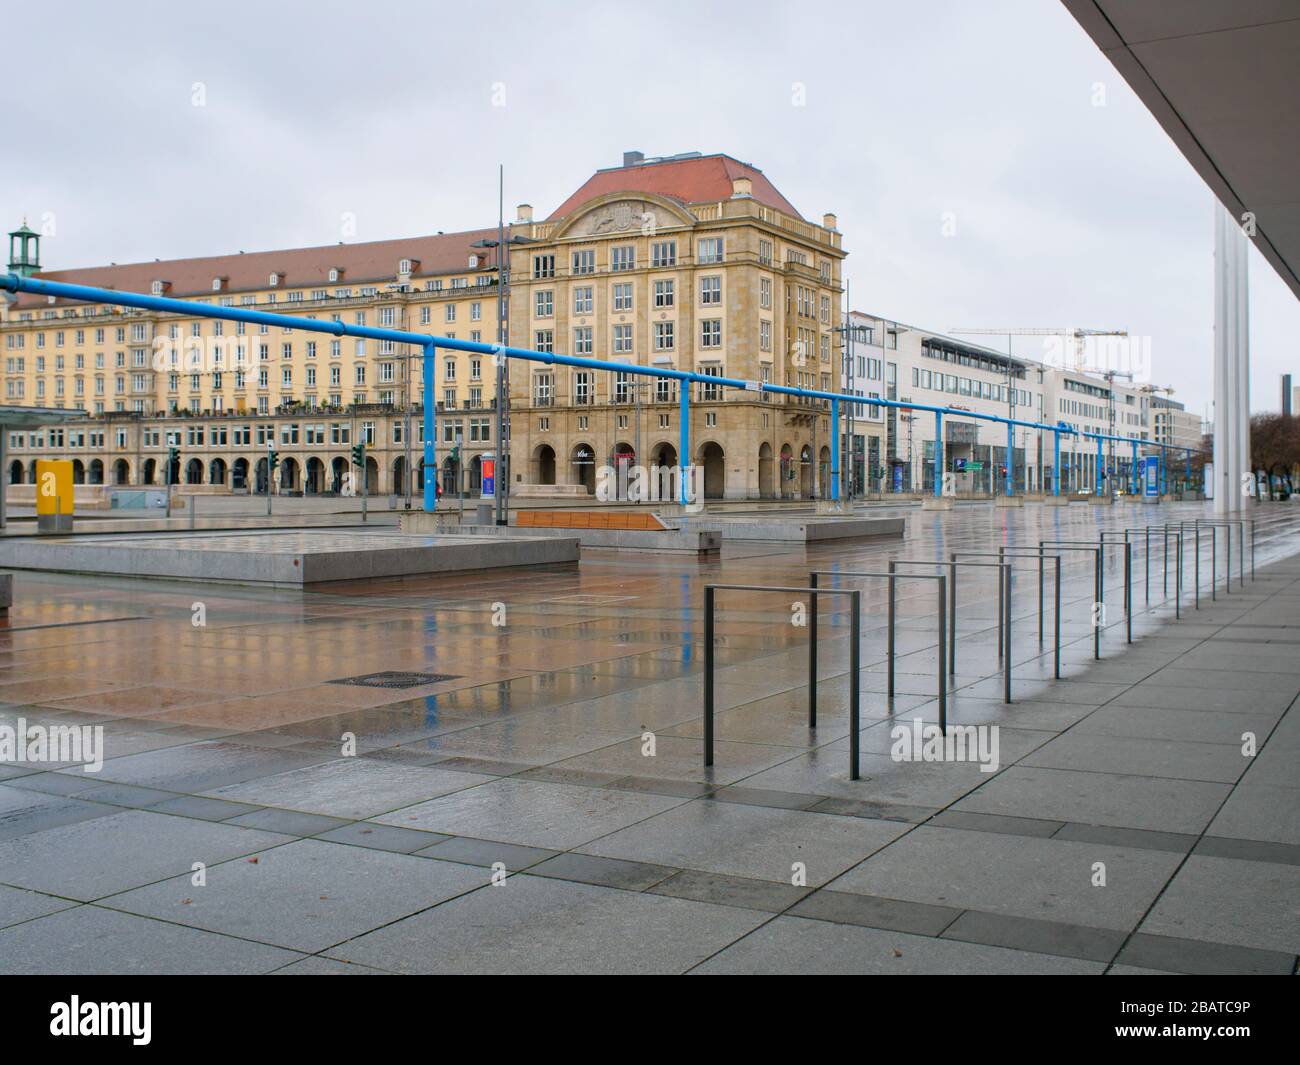 Platz vor dem Kulturpalast in Dresden während Coronavirus Lockdown Wilsdruffer Straße leere Bänke und leere Haltestelle im Regen Stock Photo